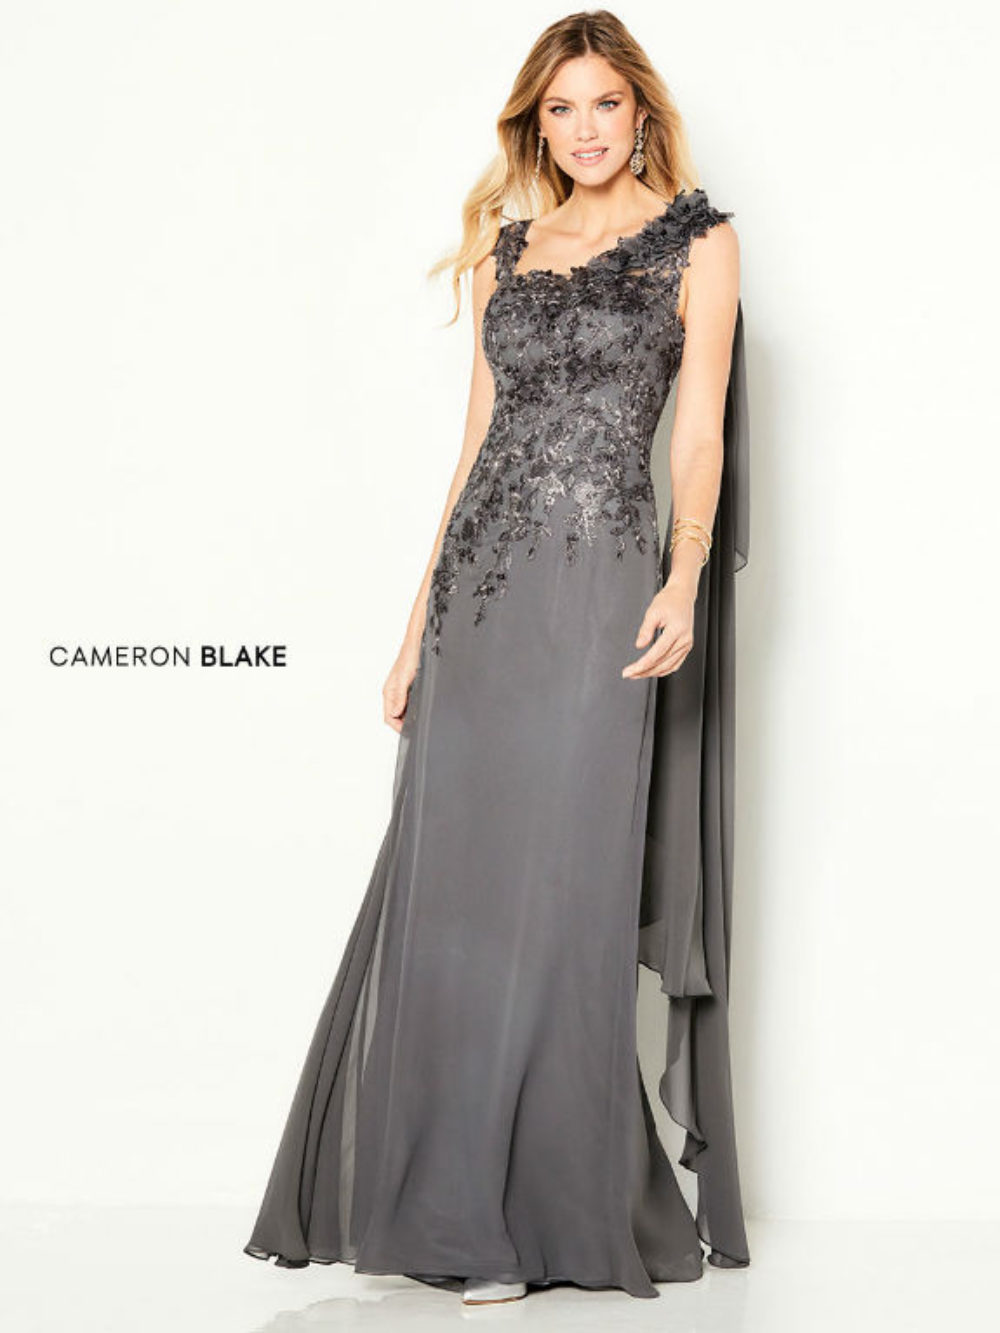 where to buy cameron blake dresses